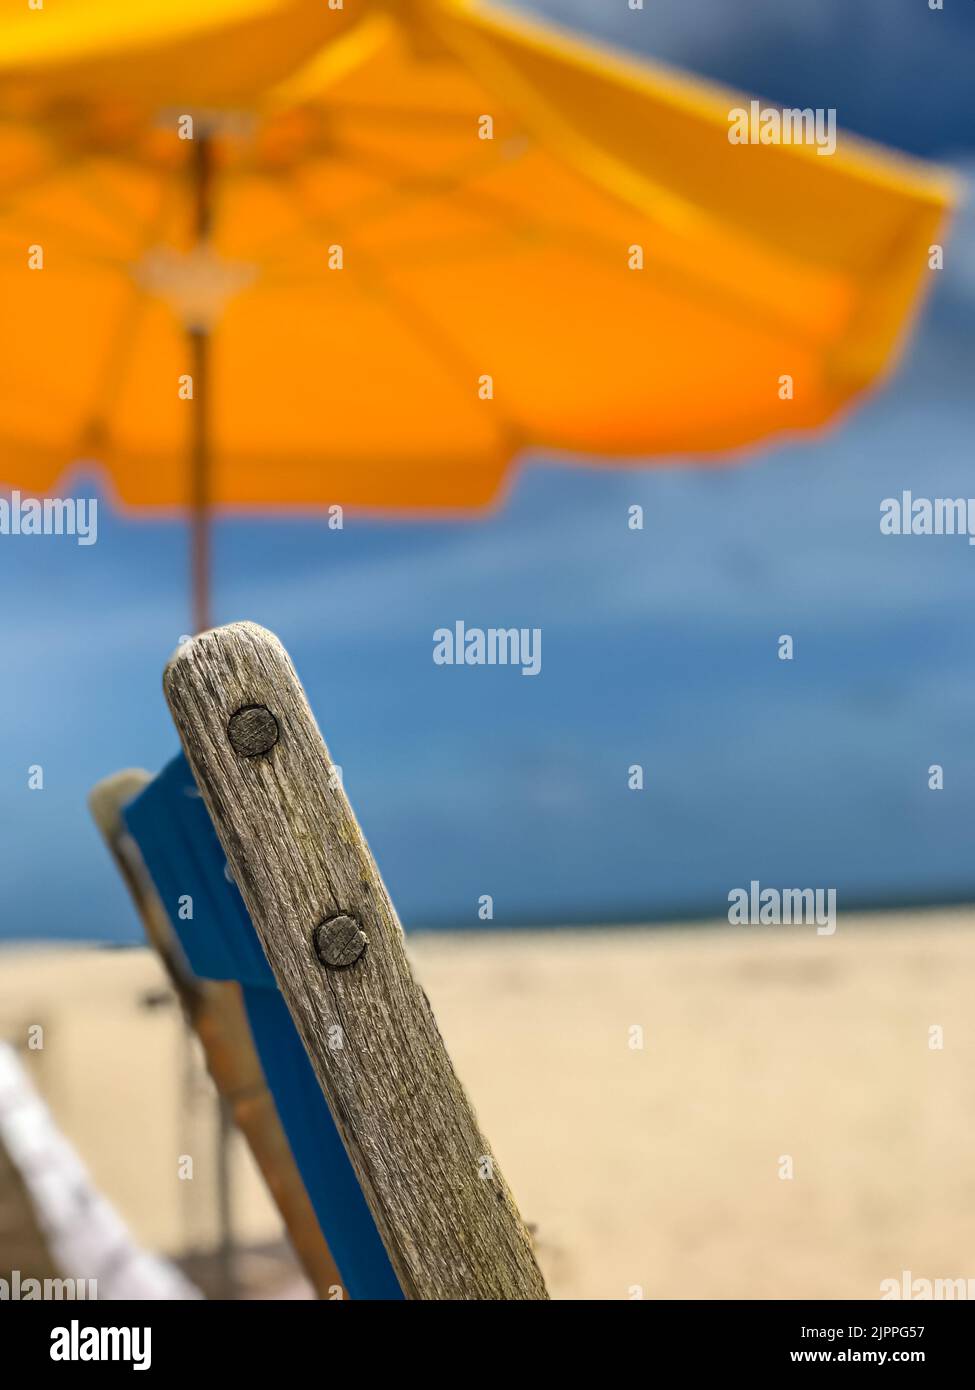 Un primer plano de una silla de madera y una sombrilla amarilla de playa transmiten una tranquila escena de playa del sur de Florida. Foto de stock